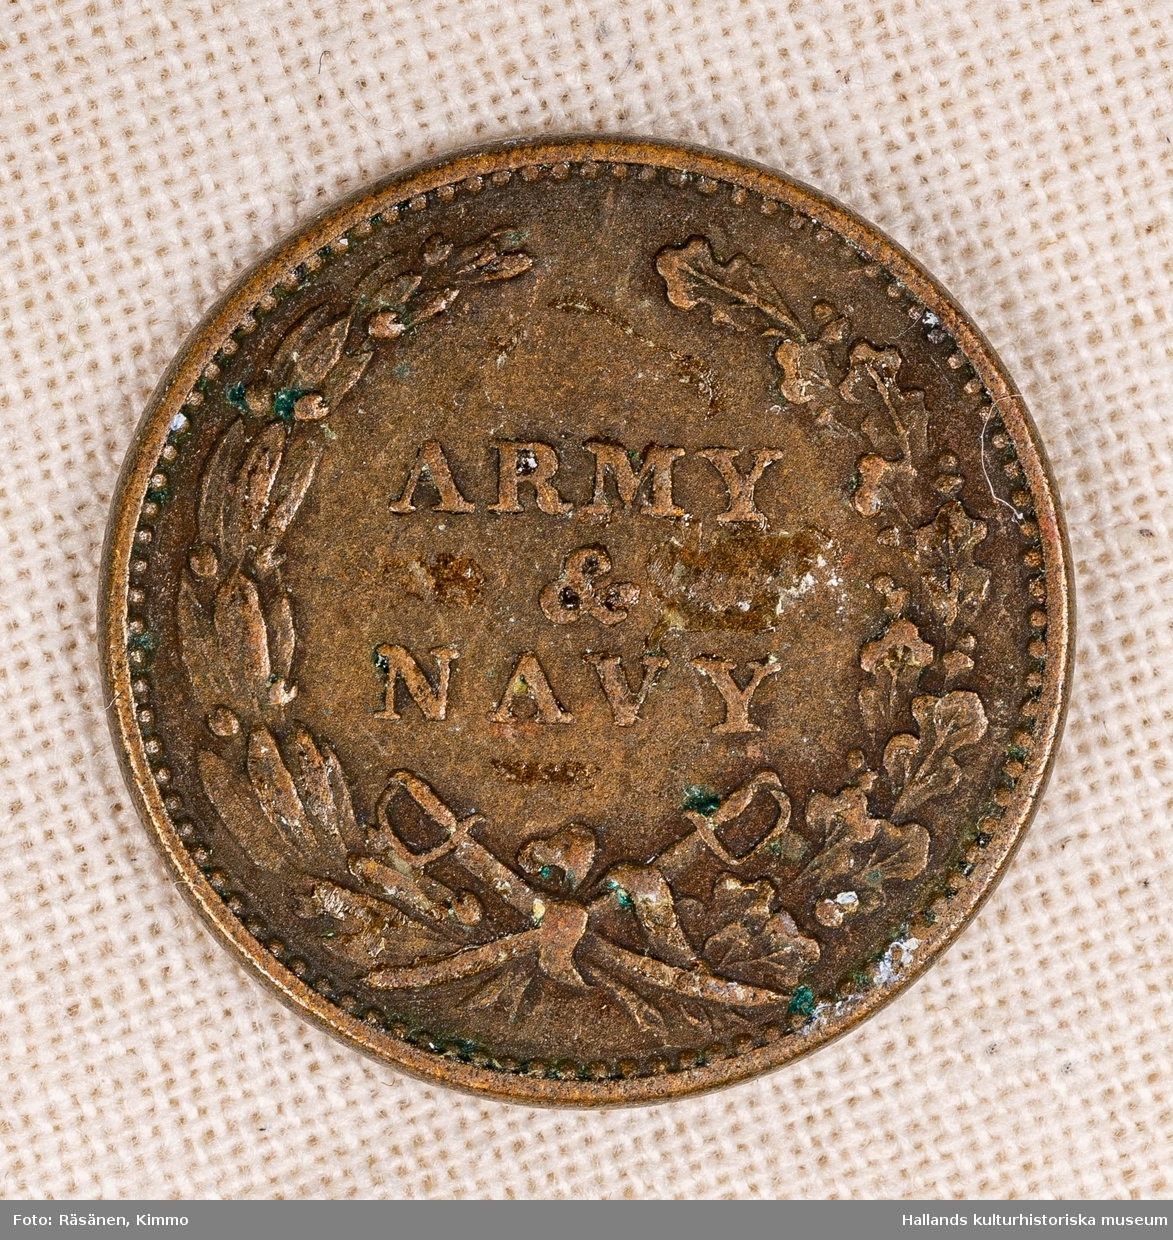 Pollett av koppar. Text: "ARMY & NAVY 1863".